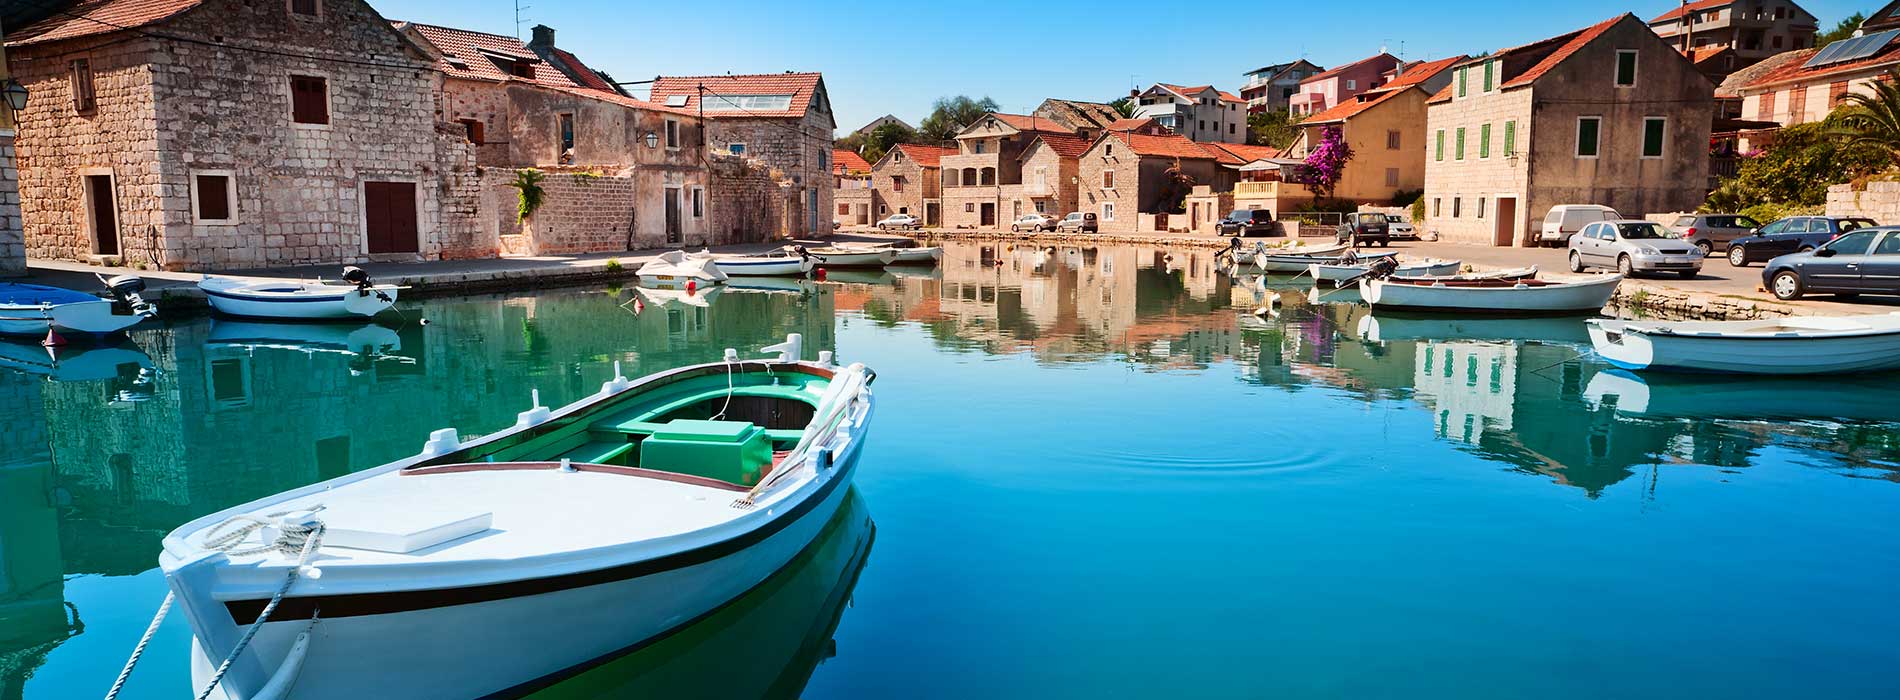 Old harbor at Adriatic sea. Hvar island.jpg